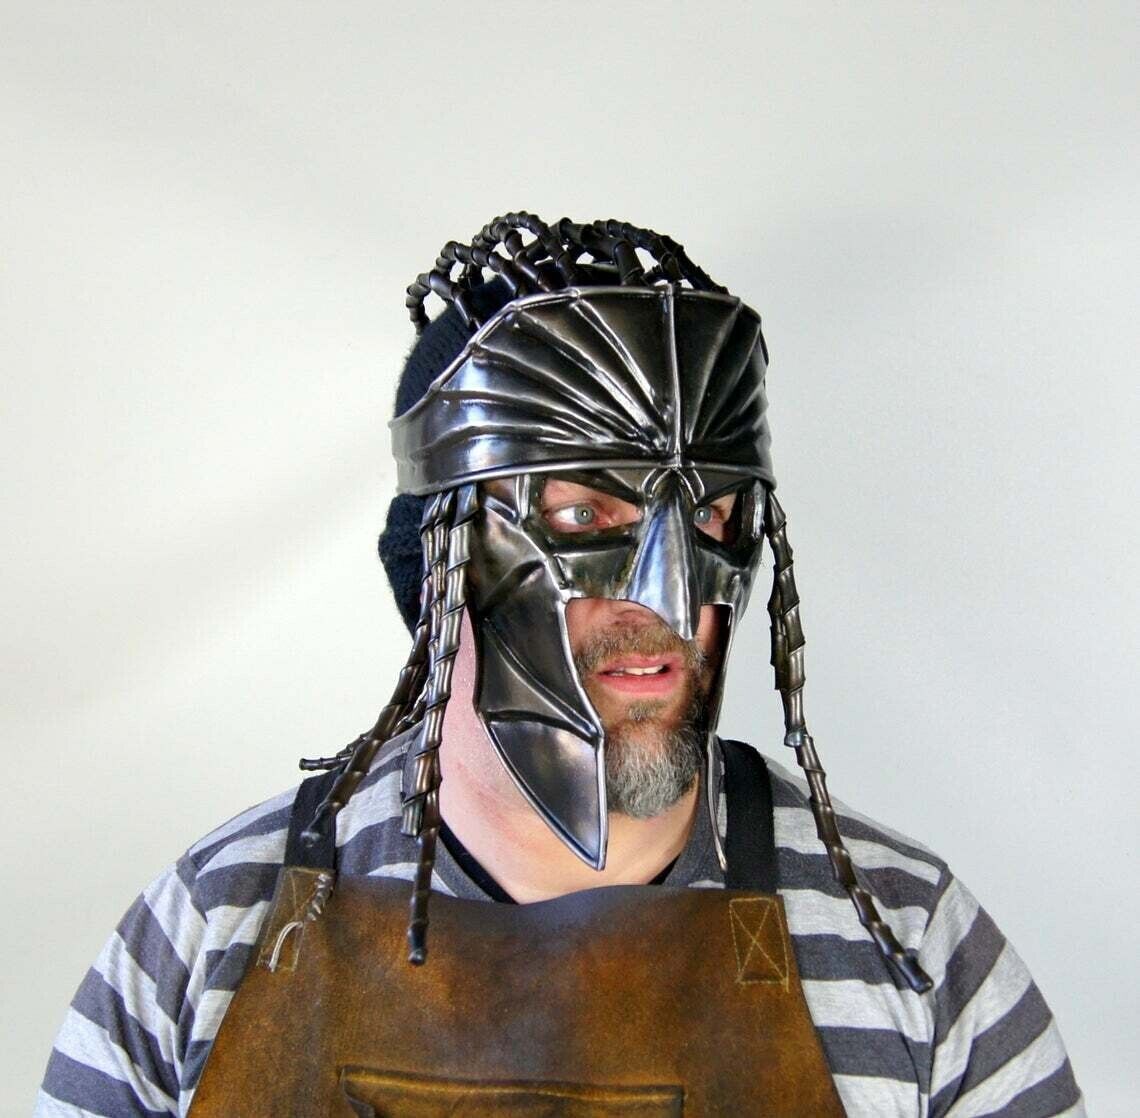 Blackened 18 Gauge Steel Medieval Pirate Fantasy Movie Role Play Armor Helmet